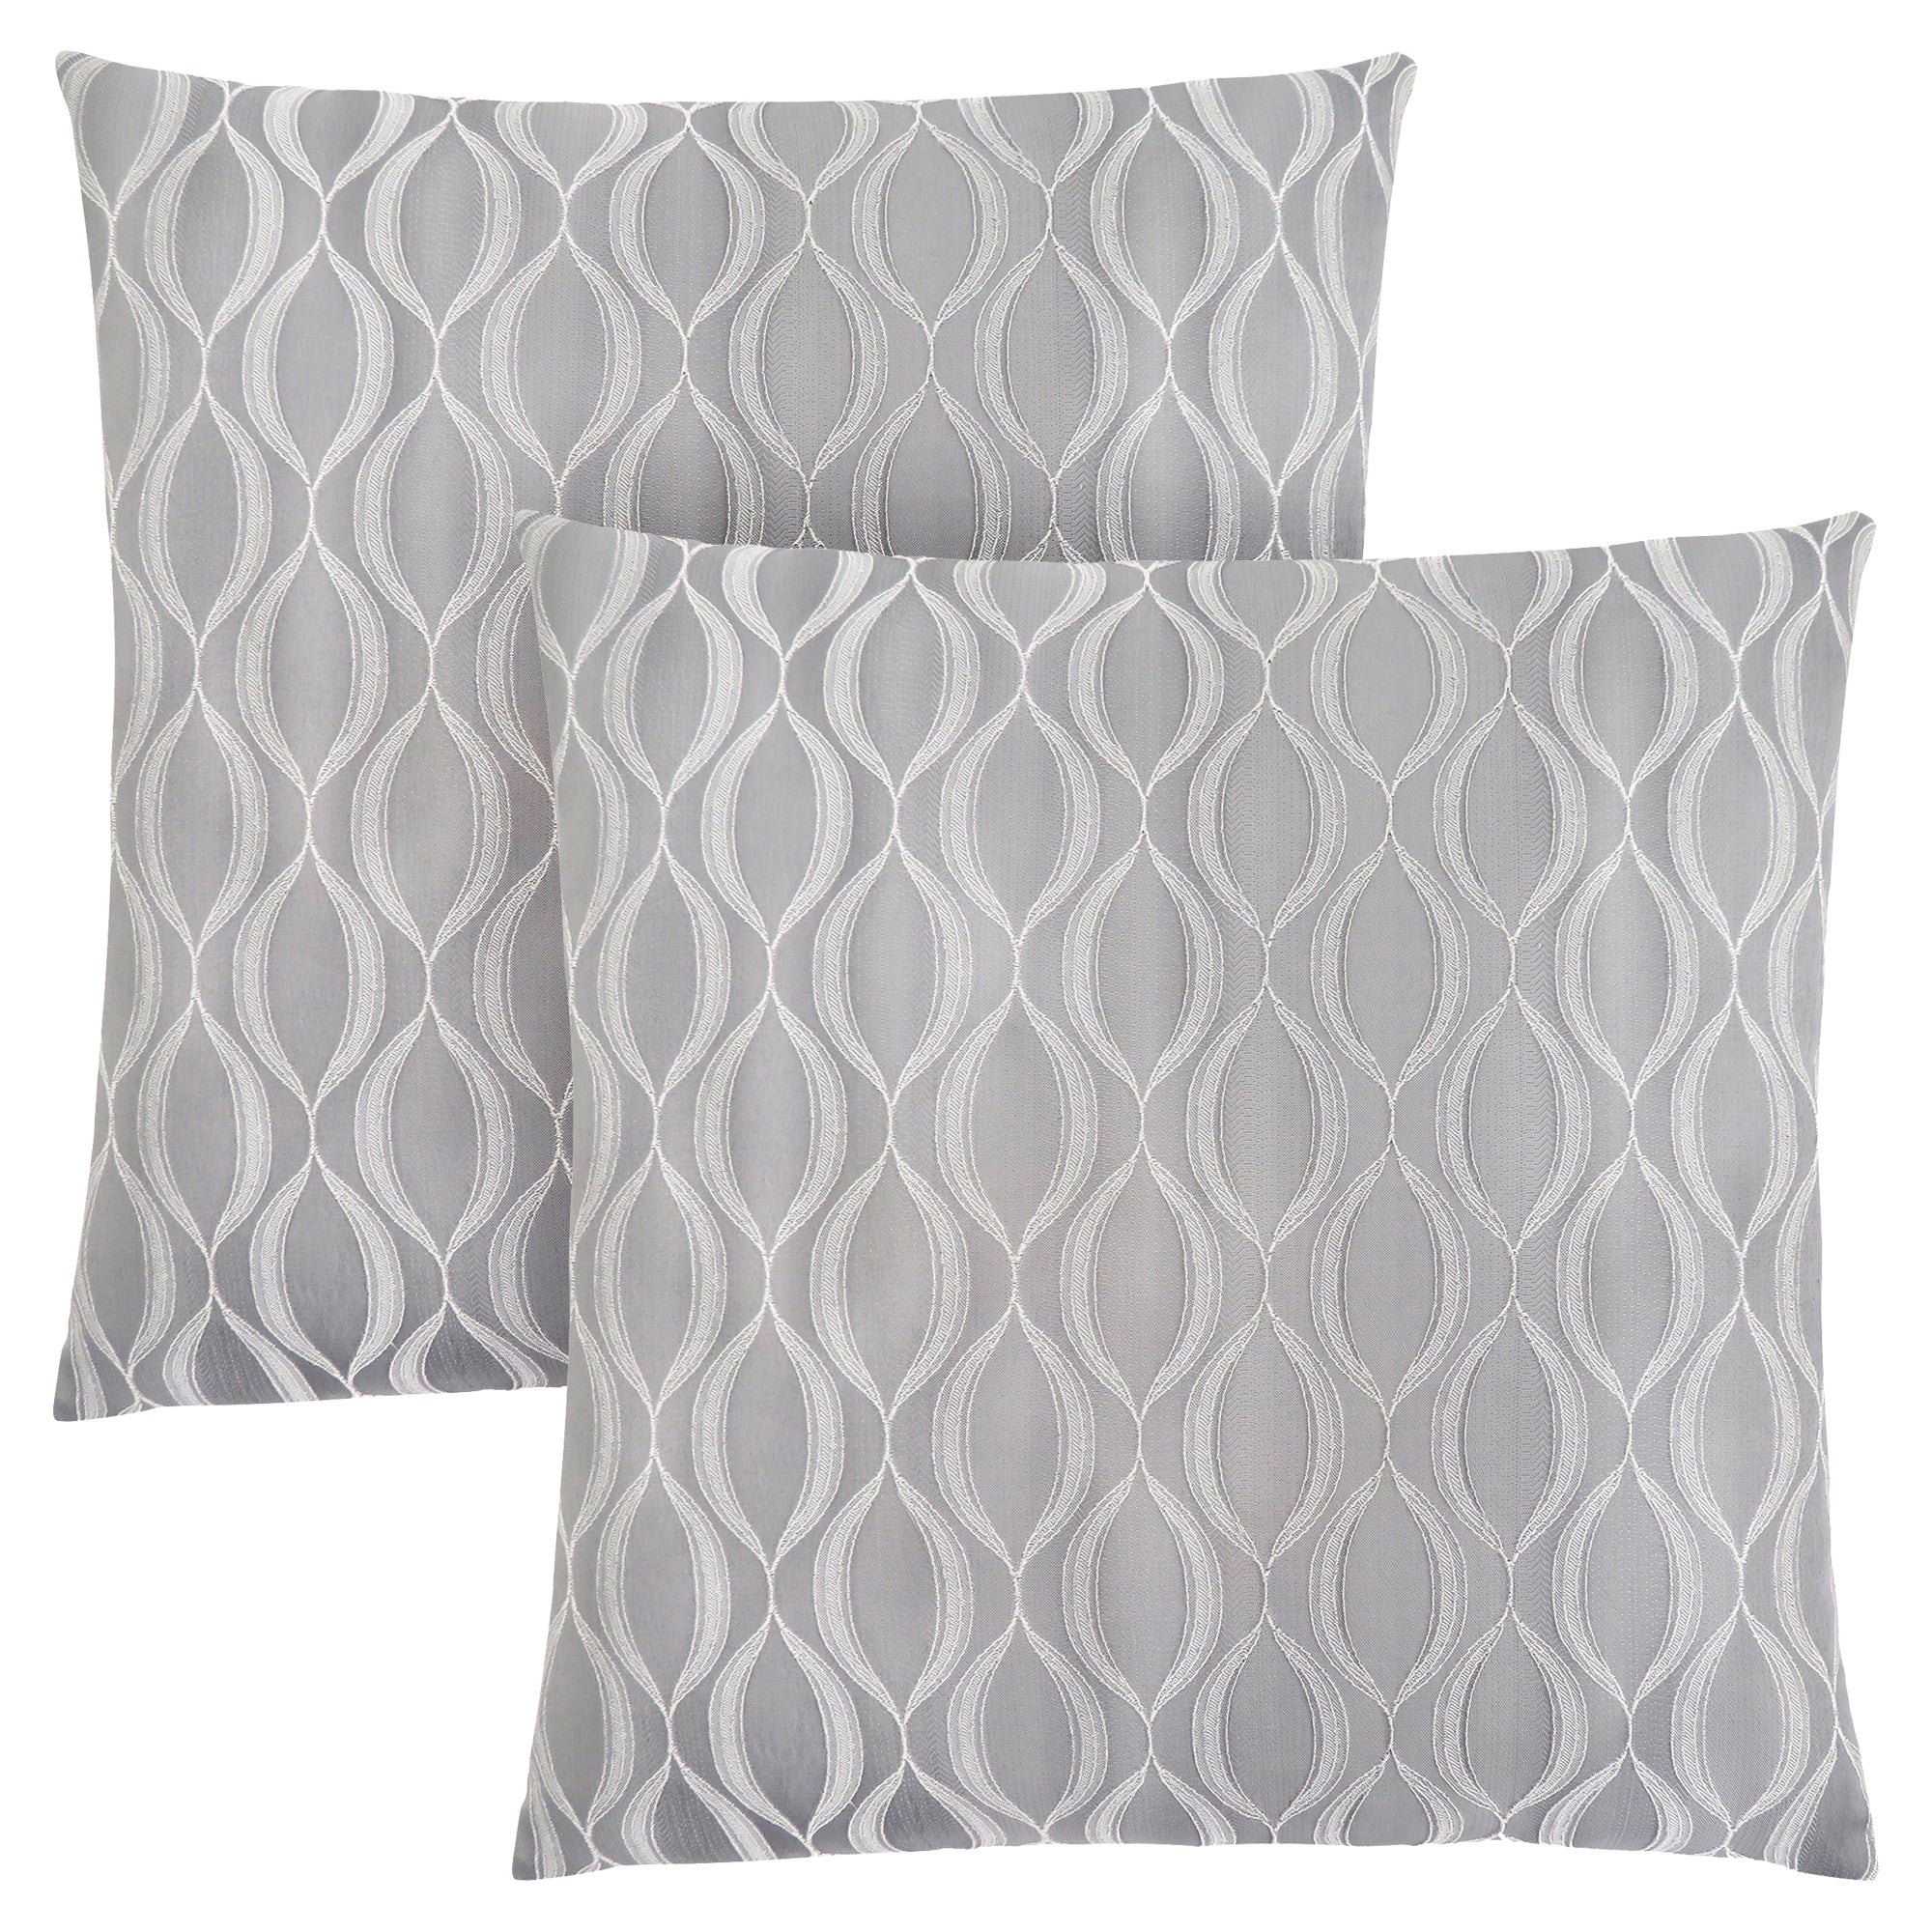 Pillow - 18X 18 / Grey Wave Pattern / 2Pcs